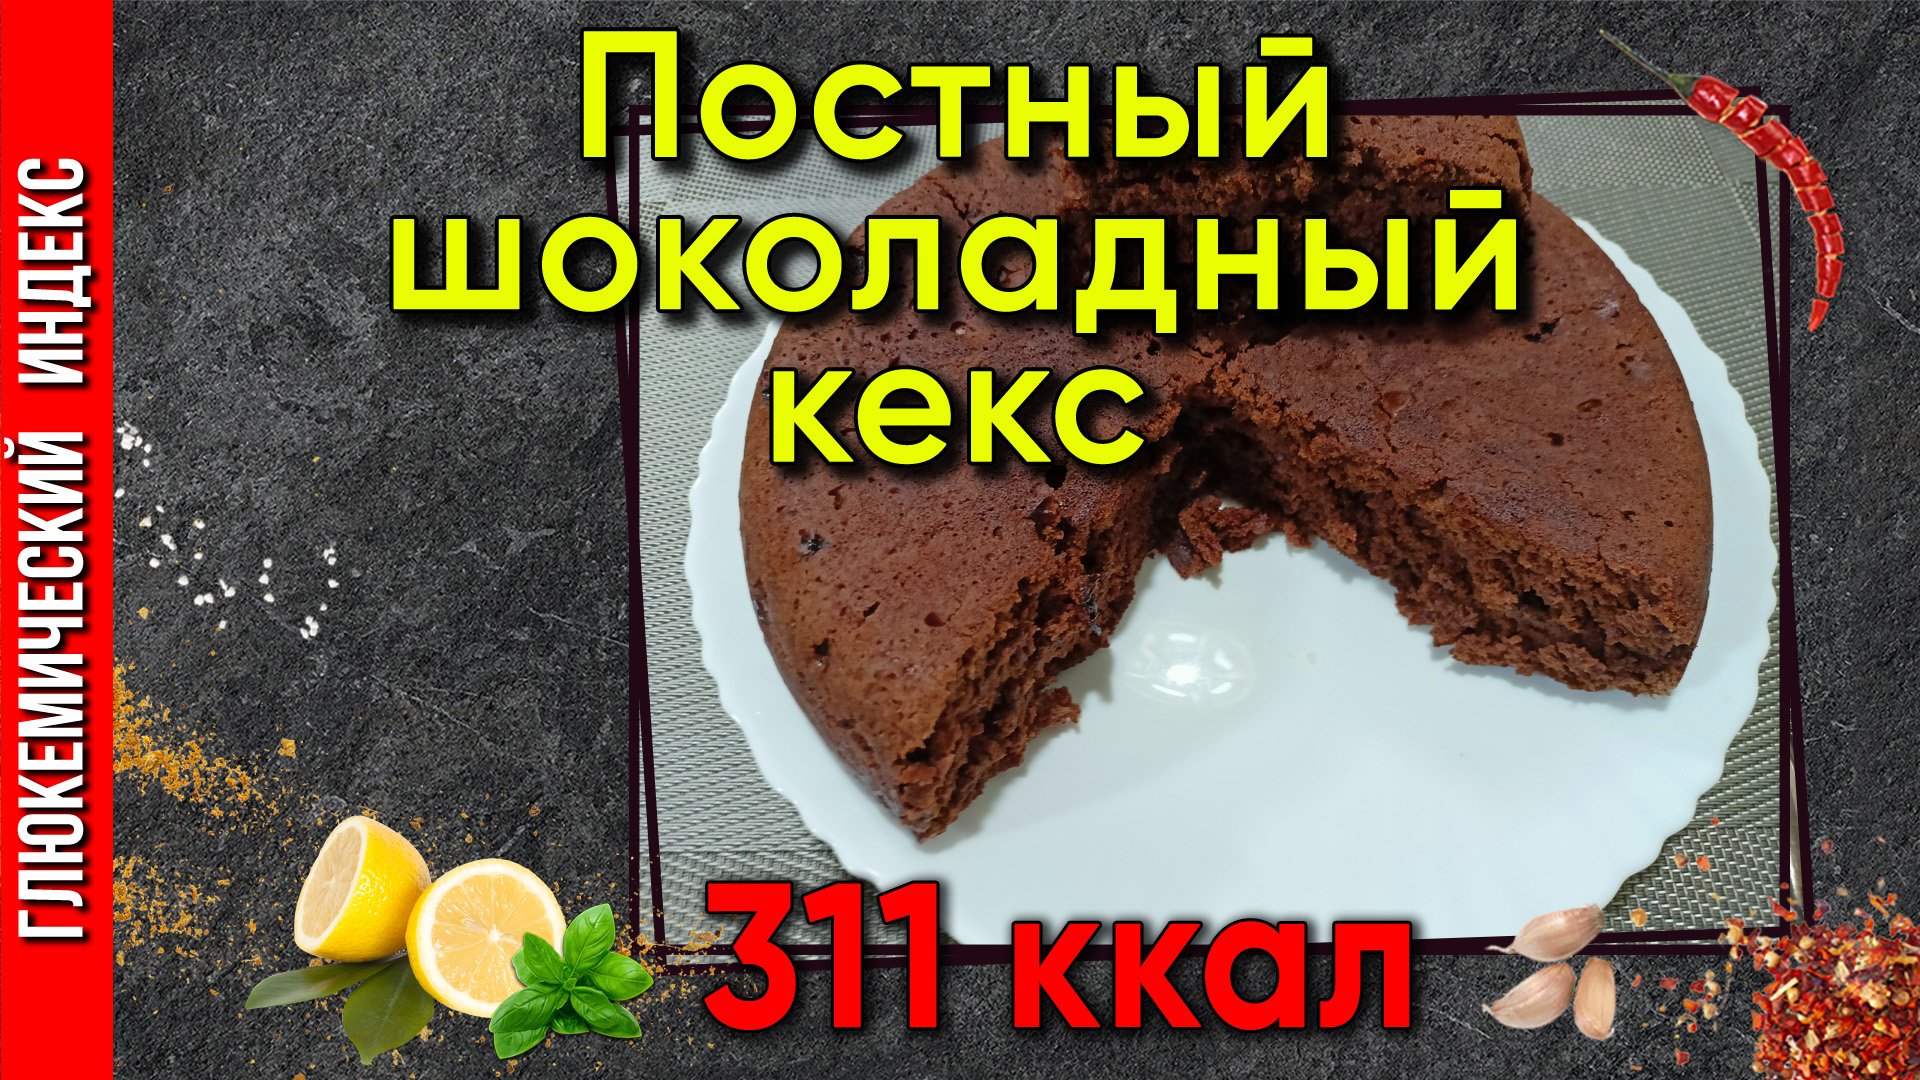 Постный шоколадный кекс — рецепт постного кекса для мультиварки.